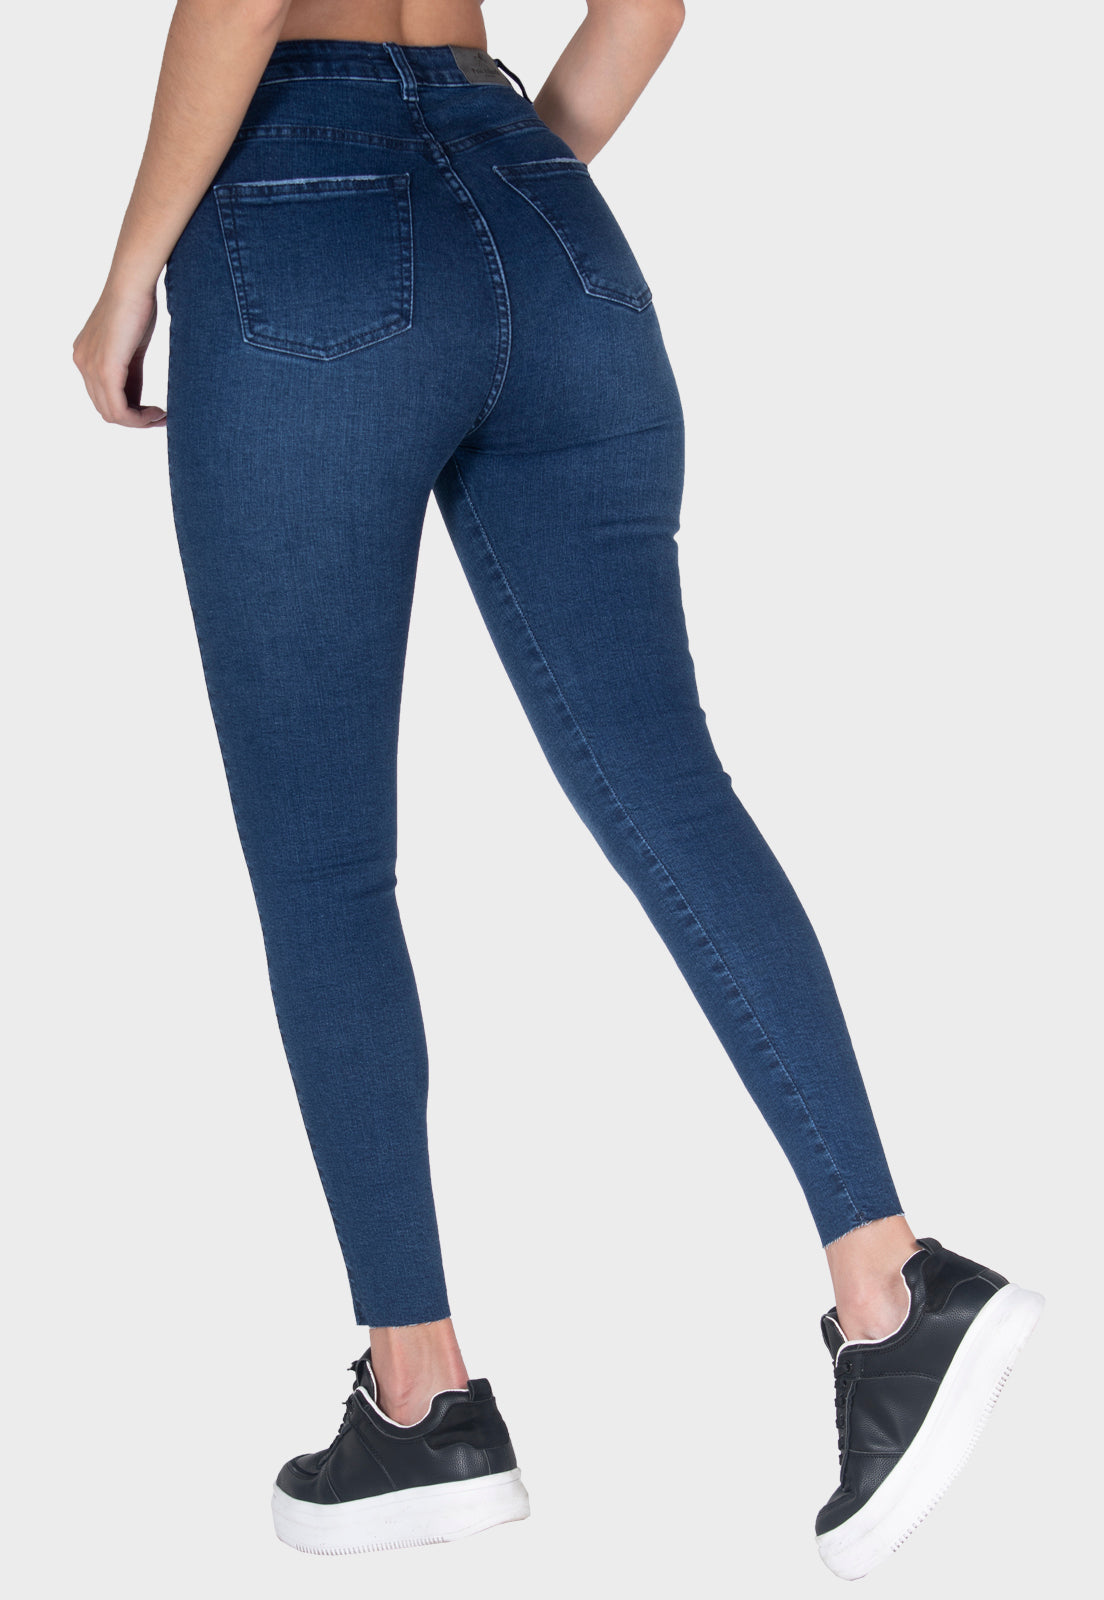 Pantalón jean skinny azul para mujer